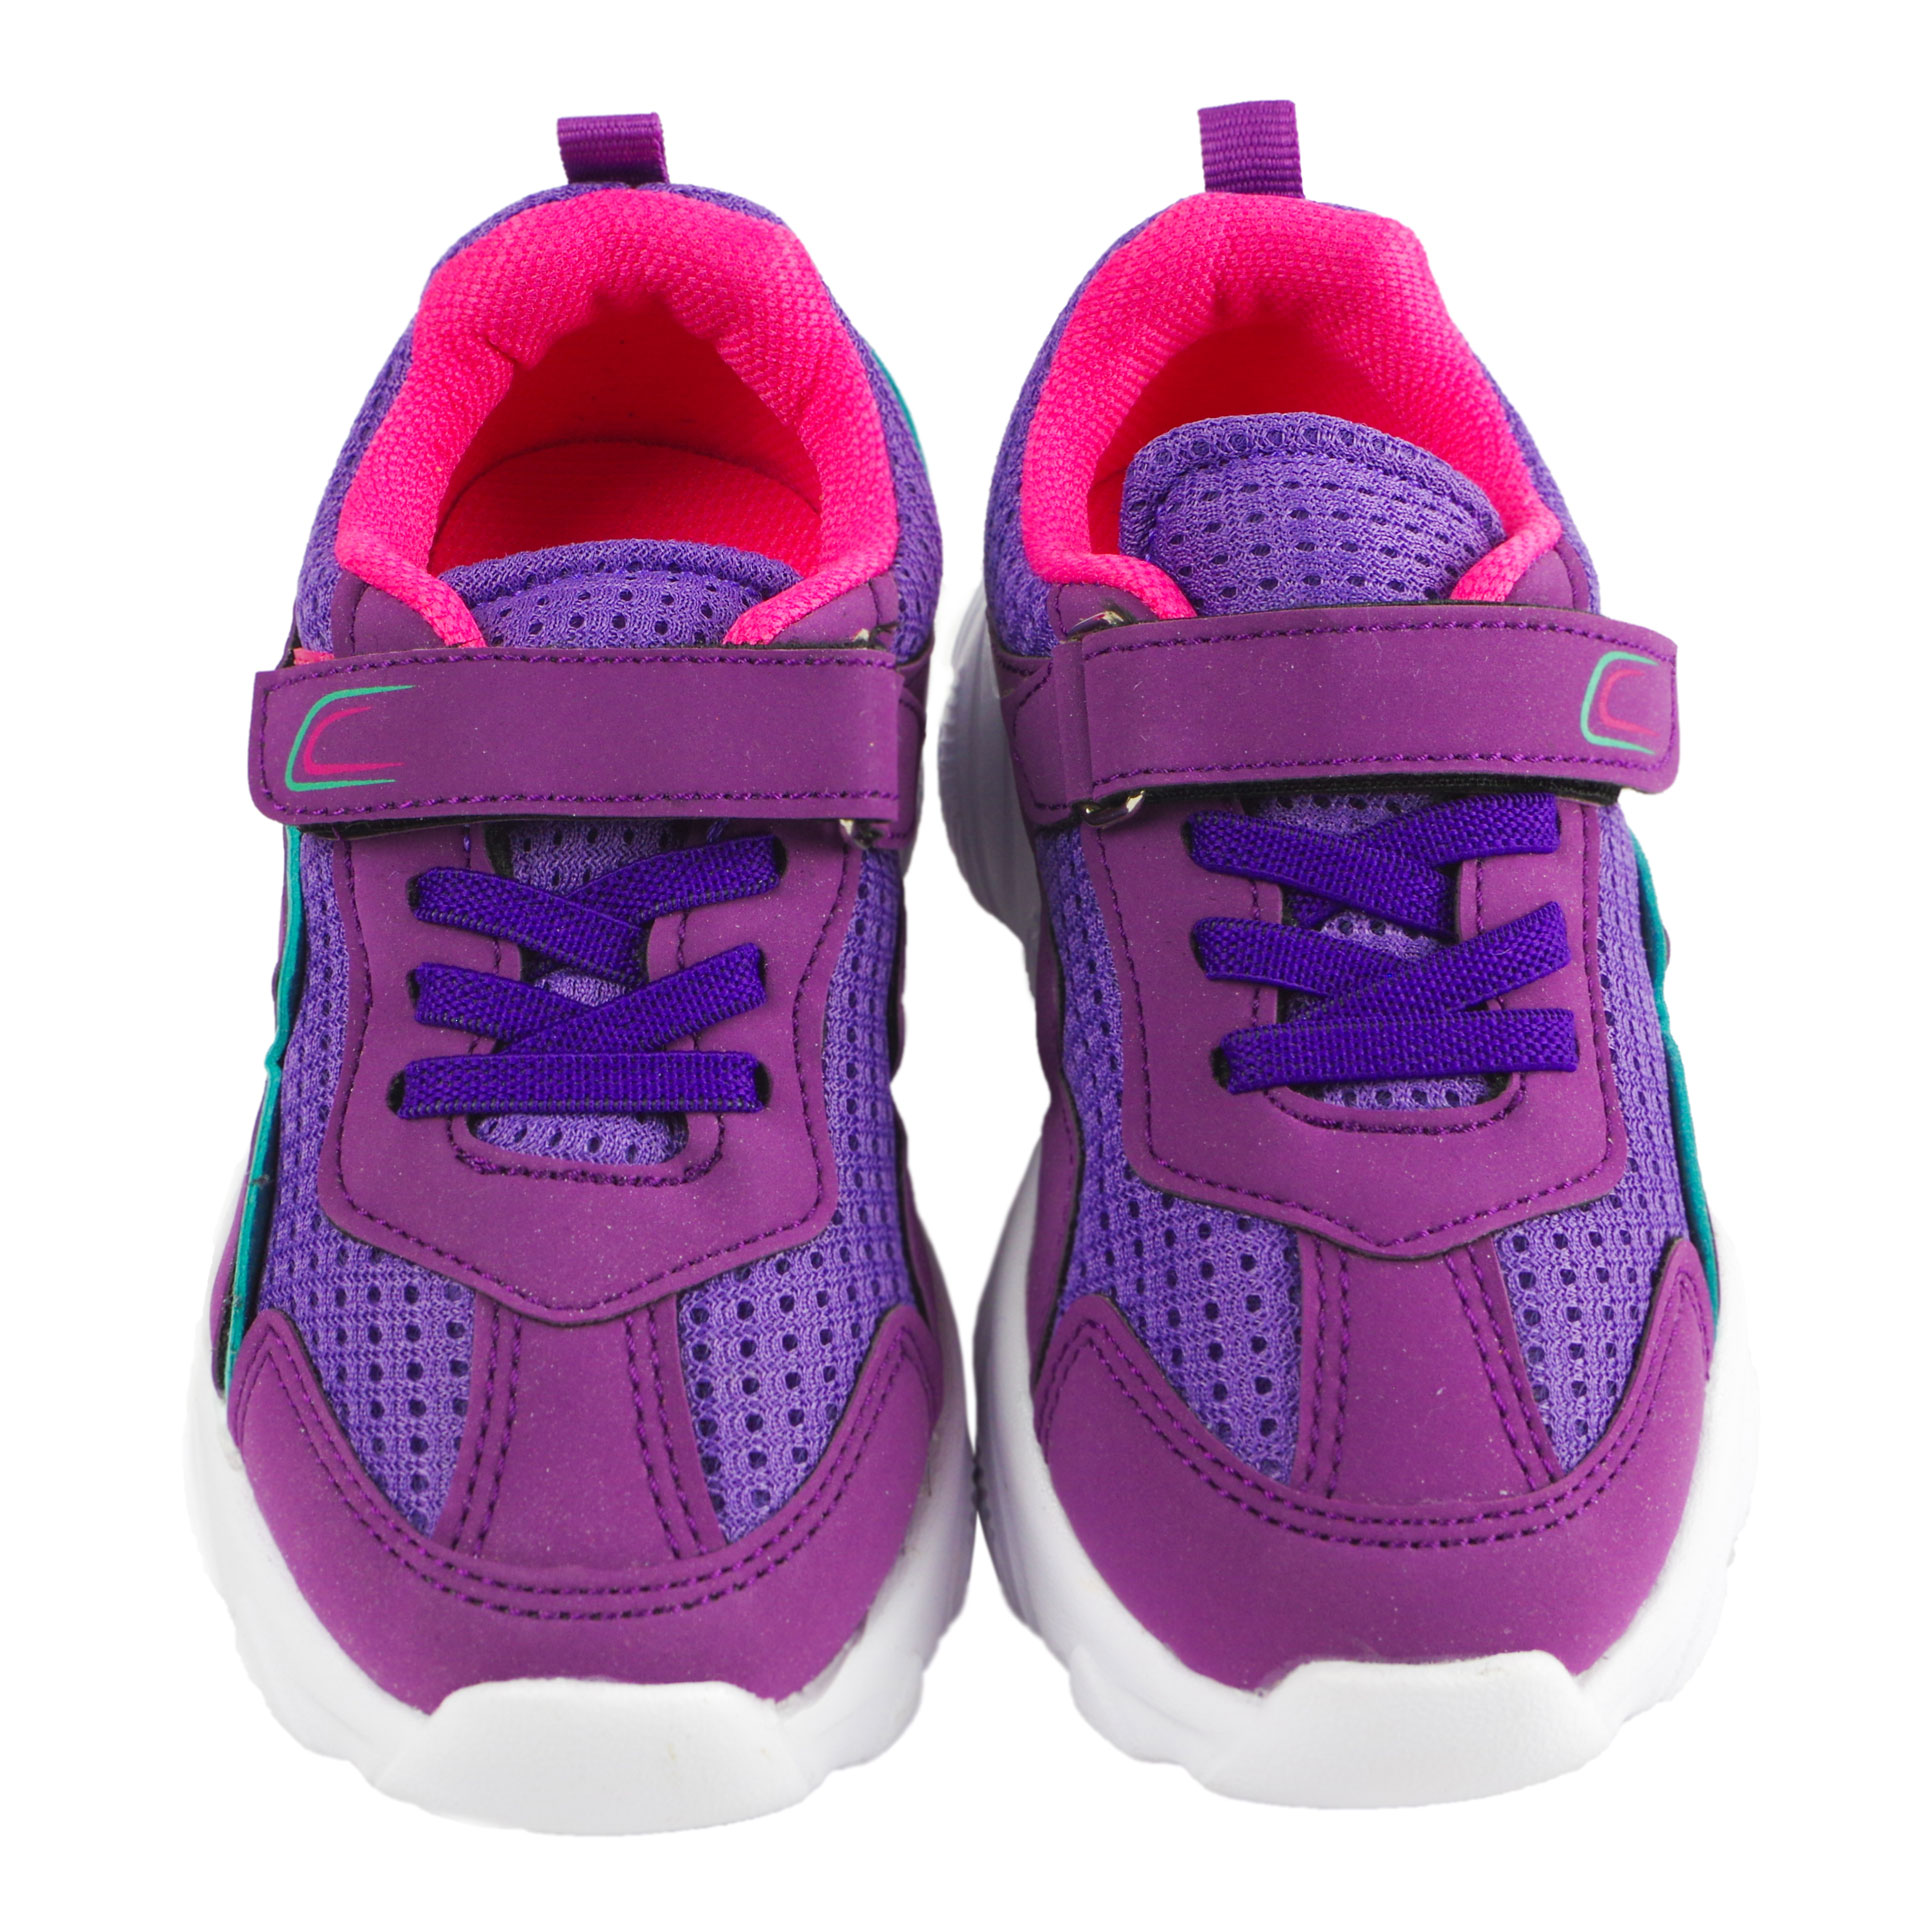 Кросівки для дівчат (2030) для дівчинки, матеріал Текстиль, Фіолетовий колір, 26-30 розміри – Sole Kids. Фото 3